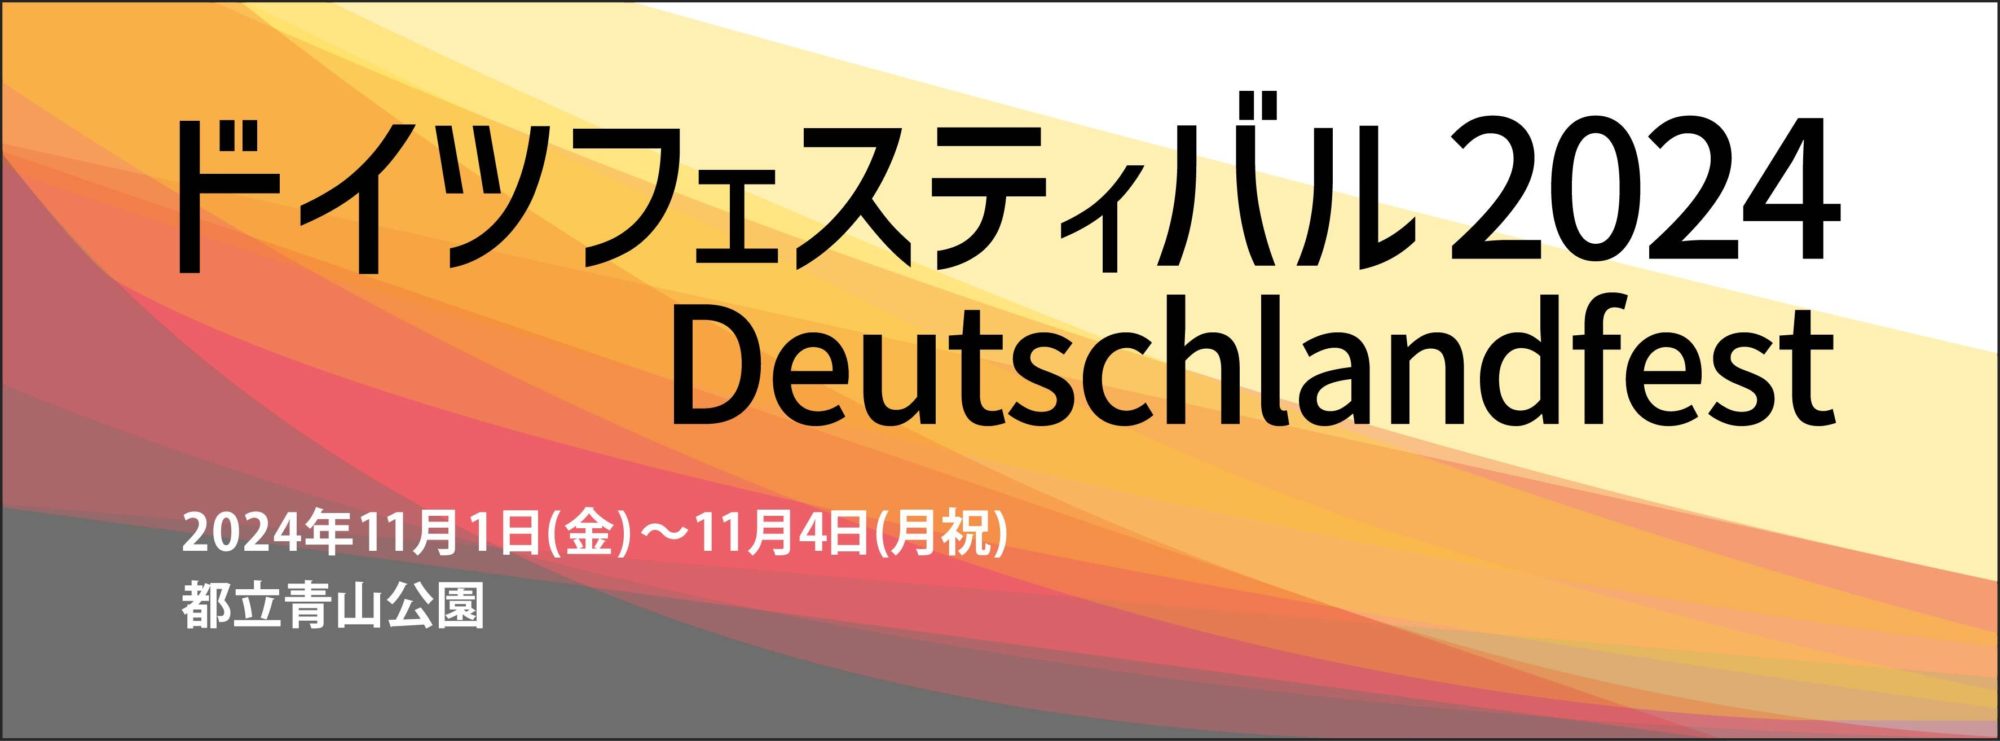 ドイツフェスティバル2024 Deutschlandfest 2024年11月1日（金）〜11月4日（月祝）都立青山公園 Veranstaltung beendet